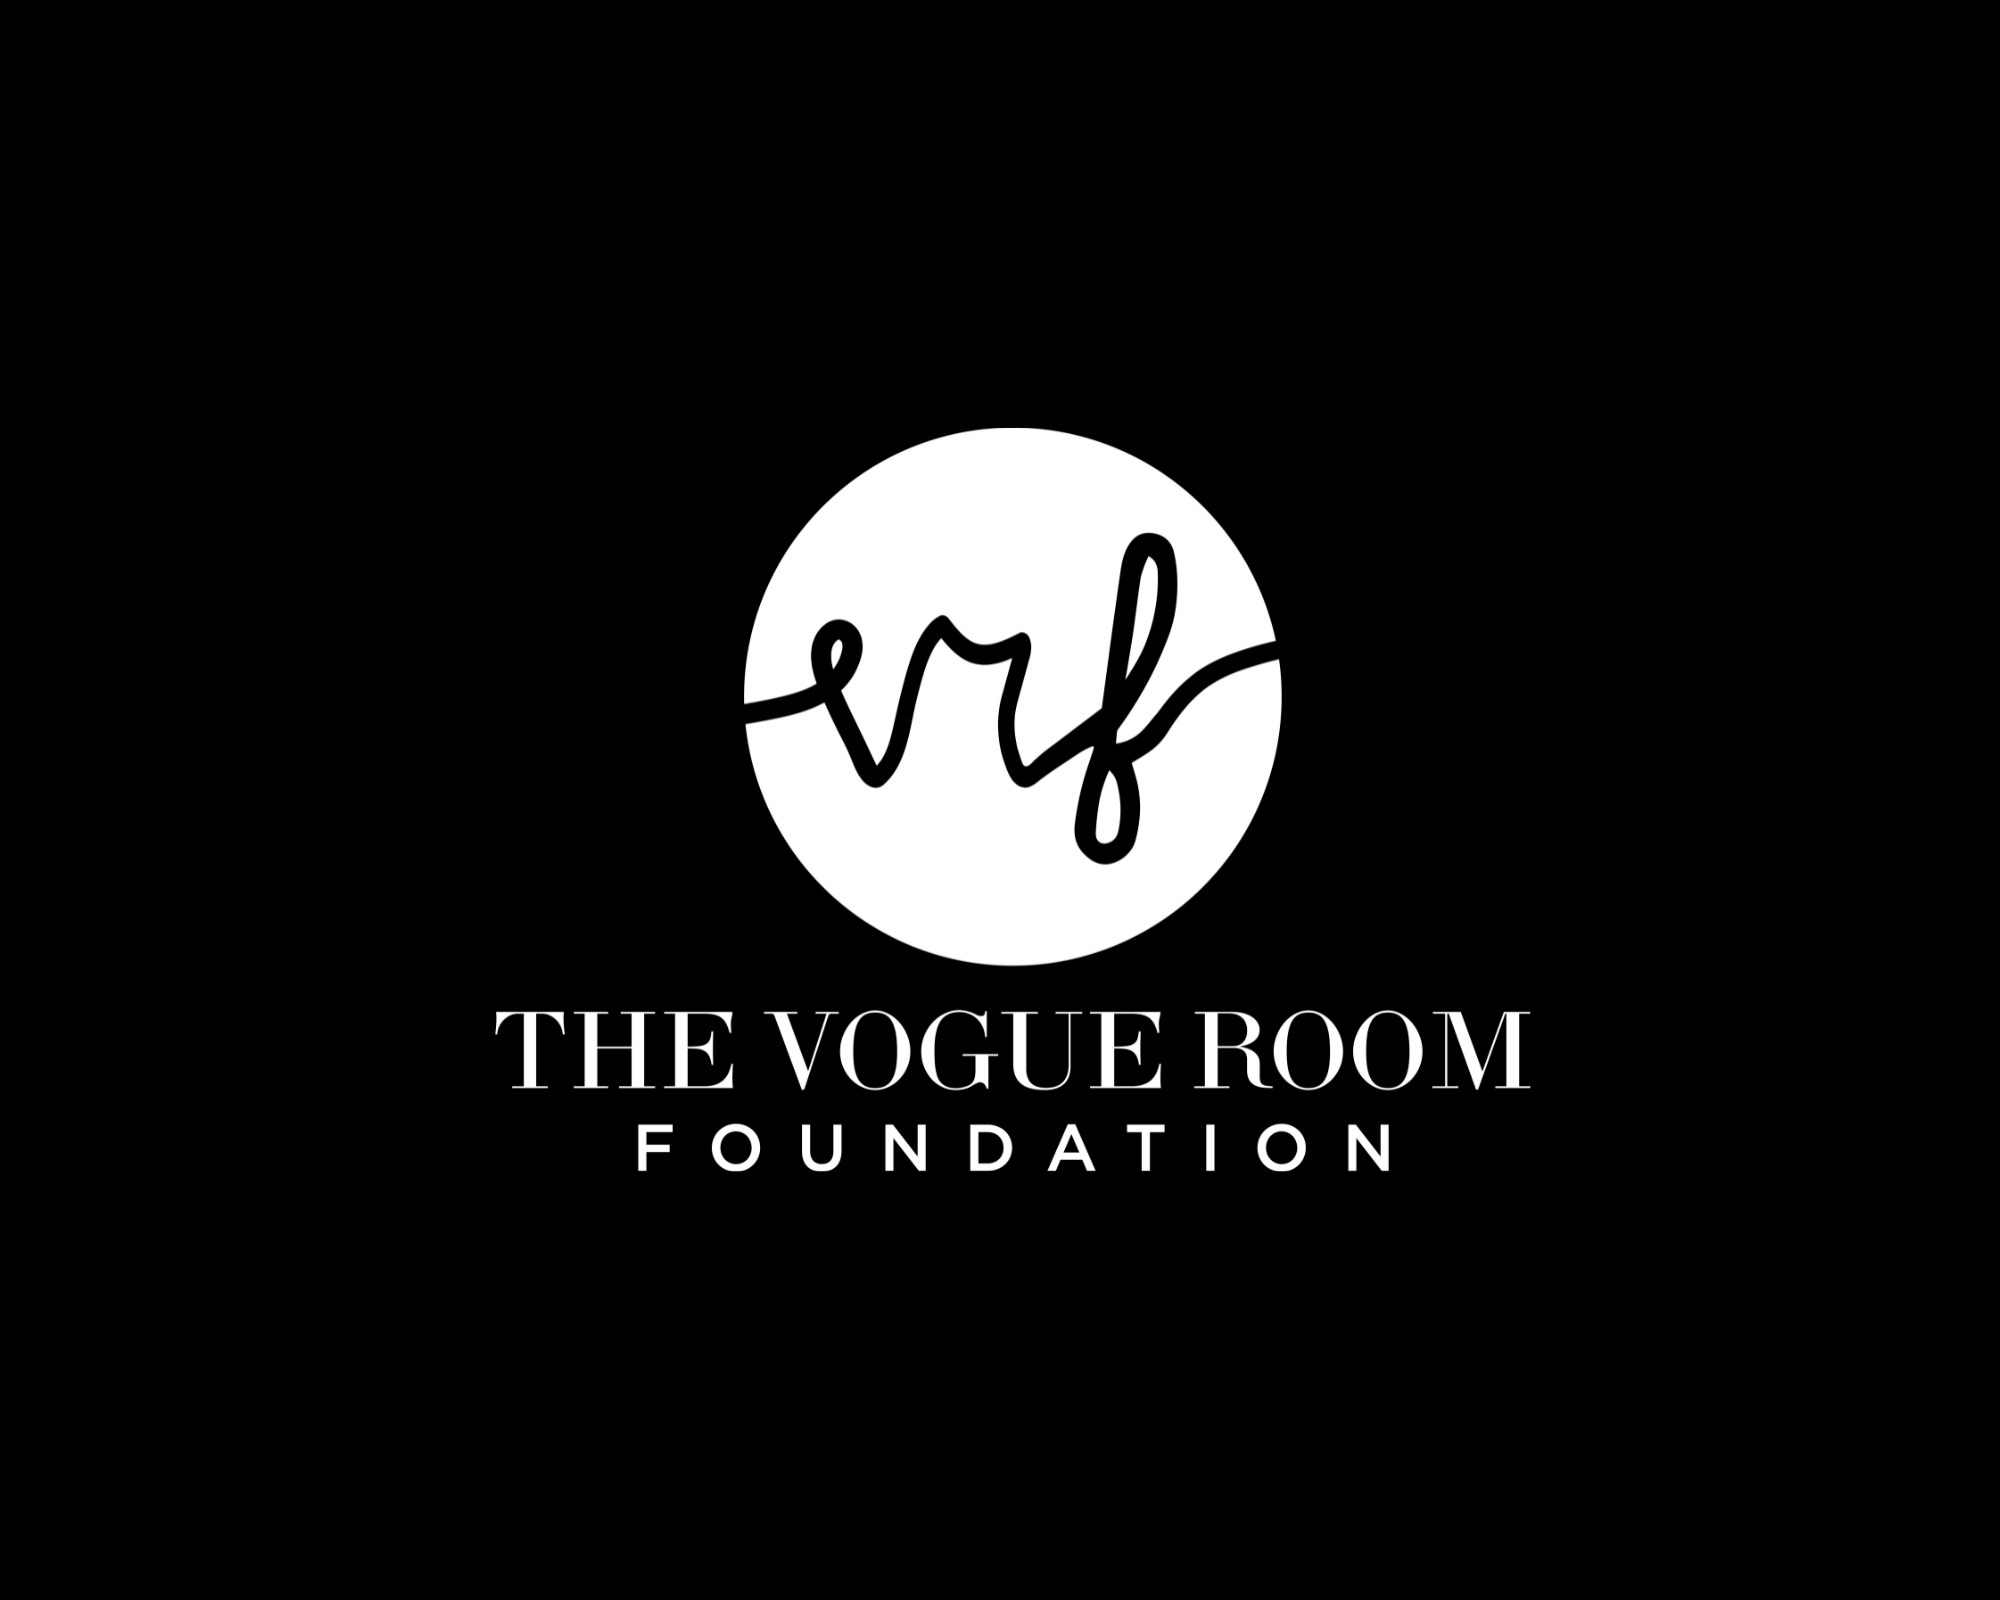 The Vogue Room Foundation logo